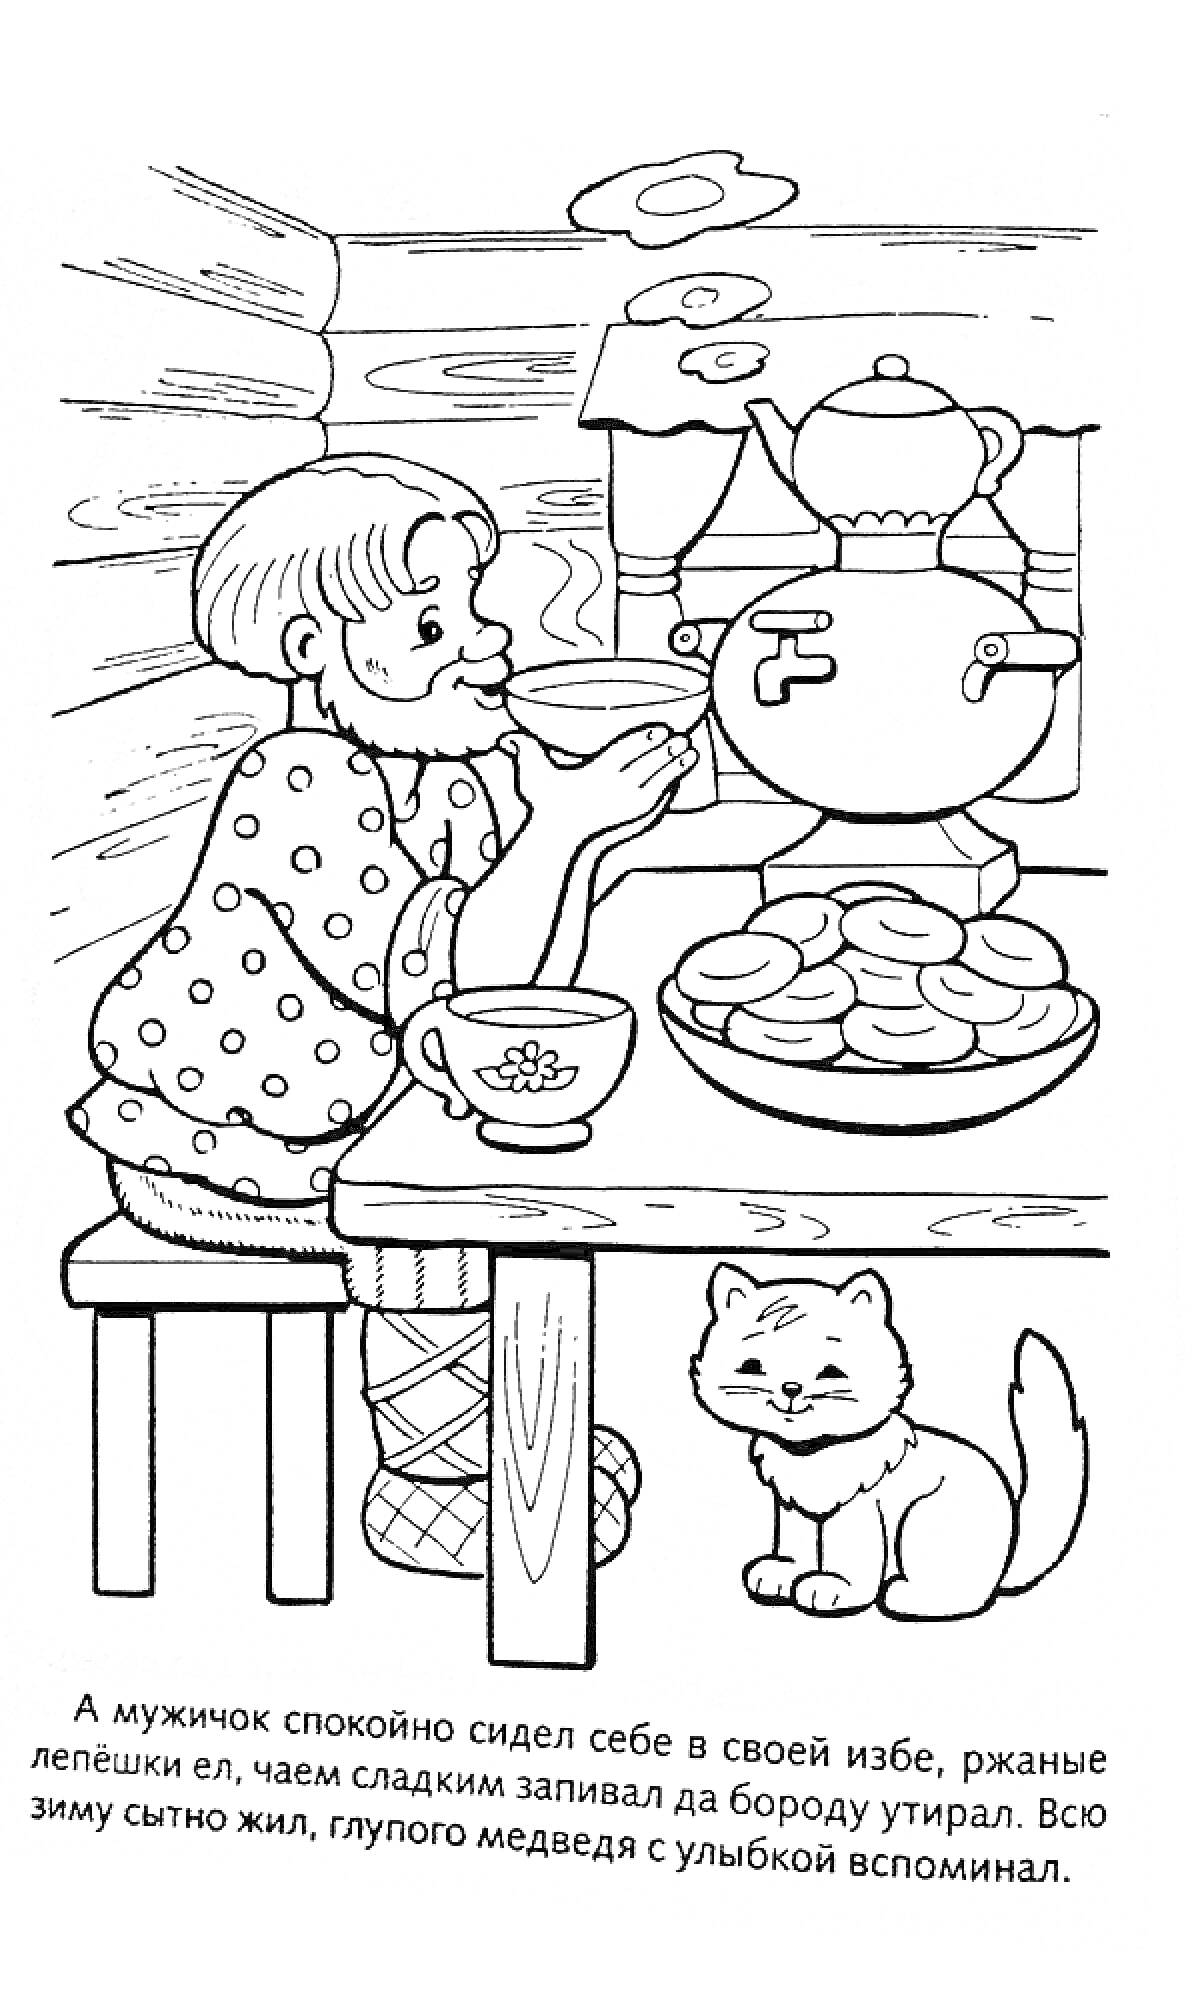 Мужичок в избе с самоваром, блинами и котом